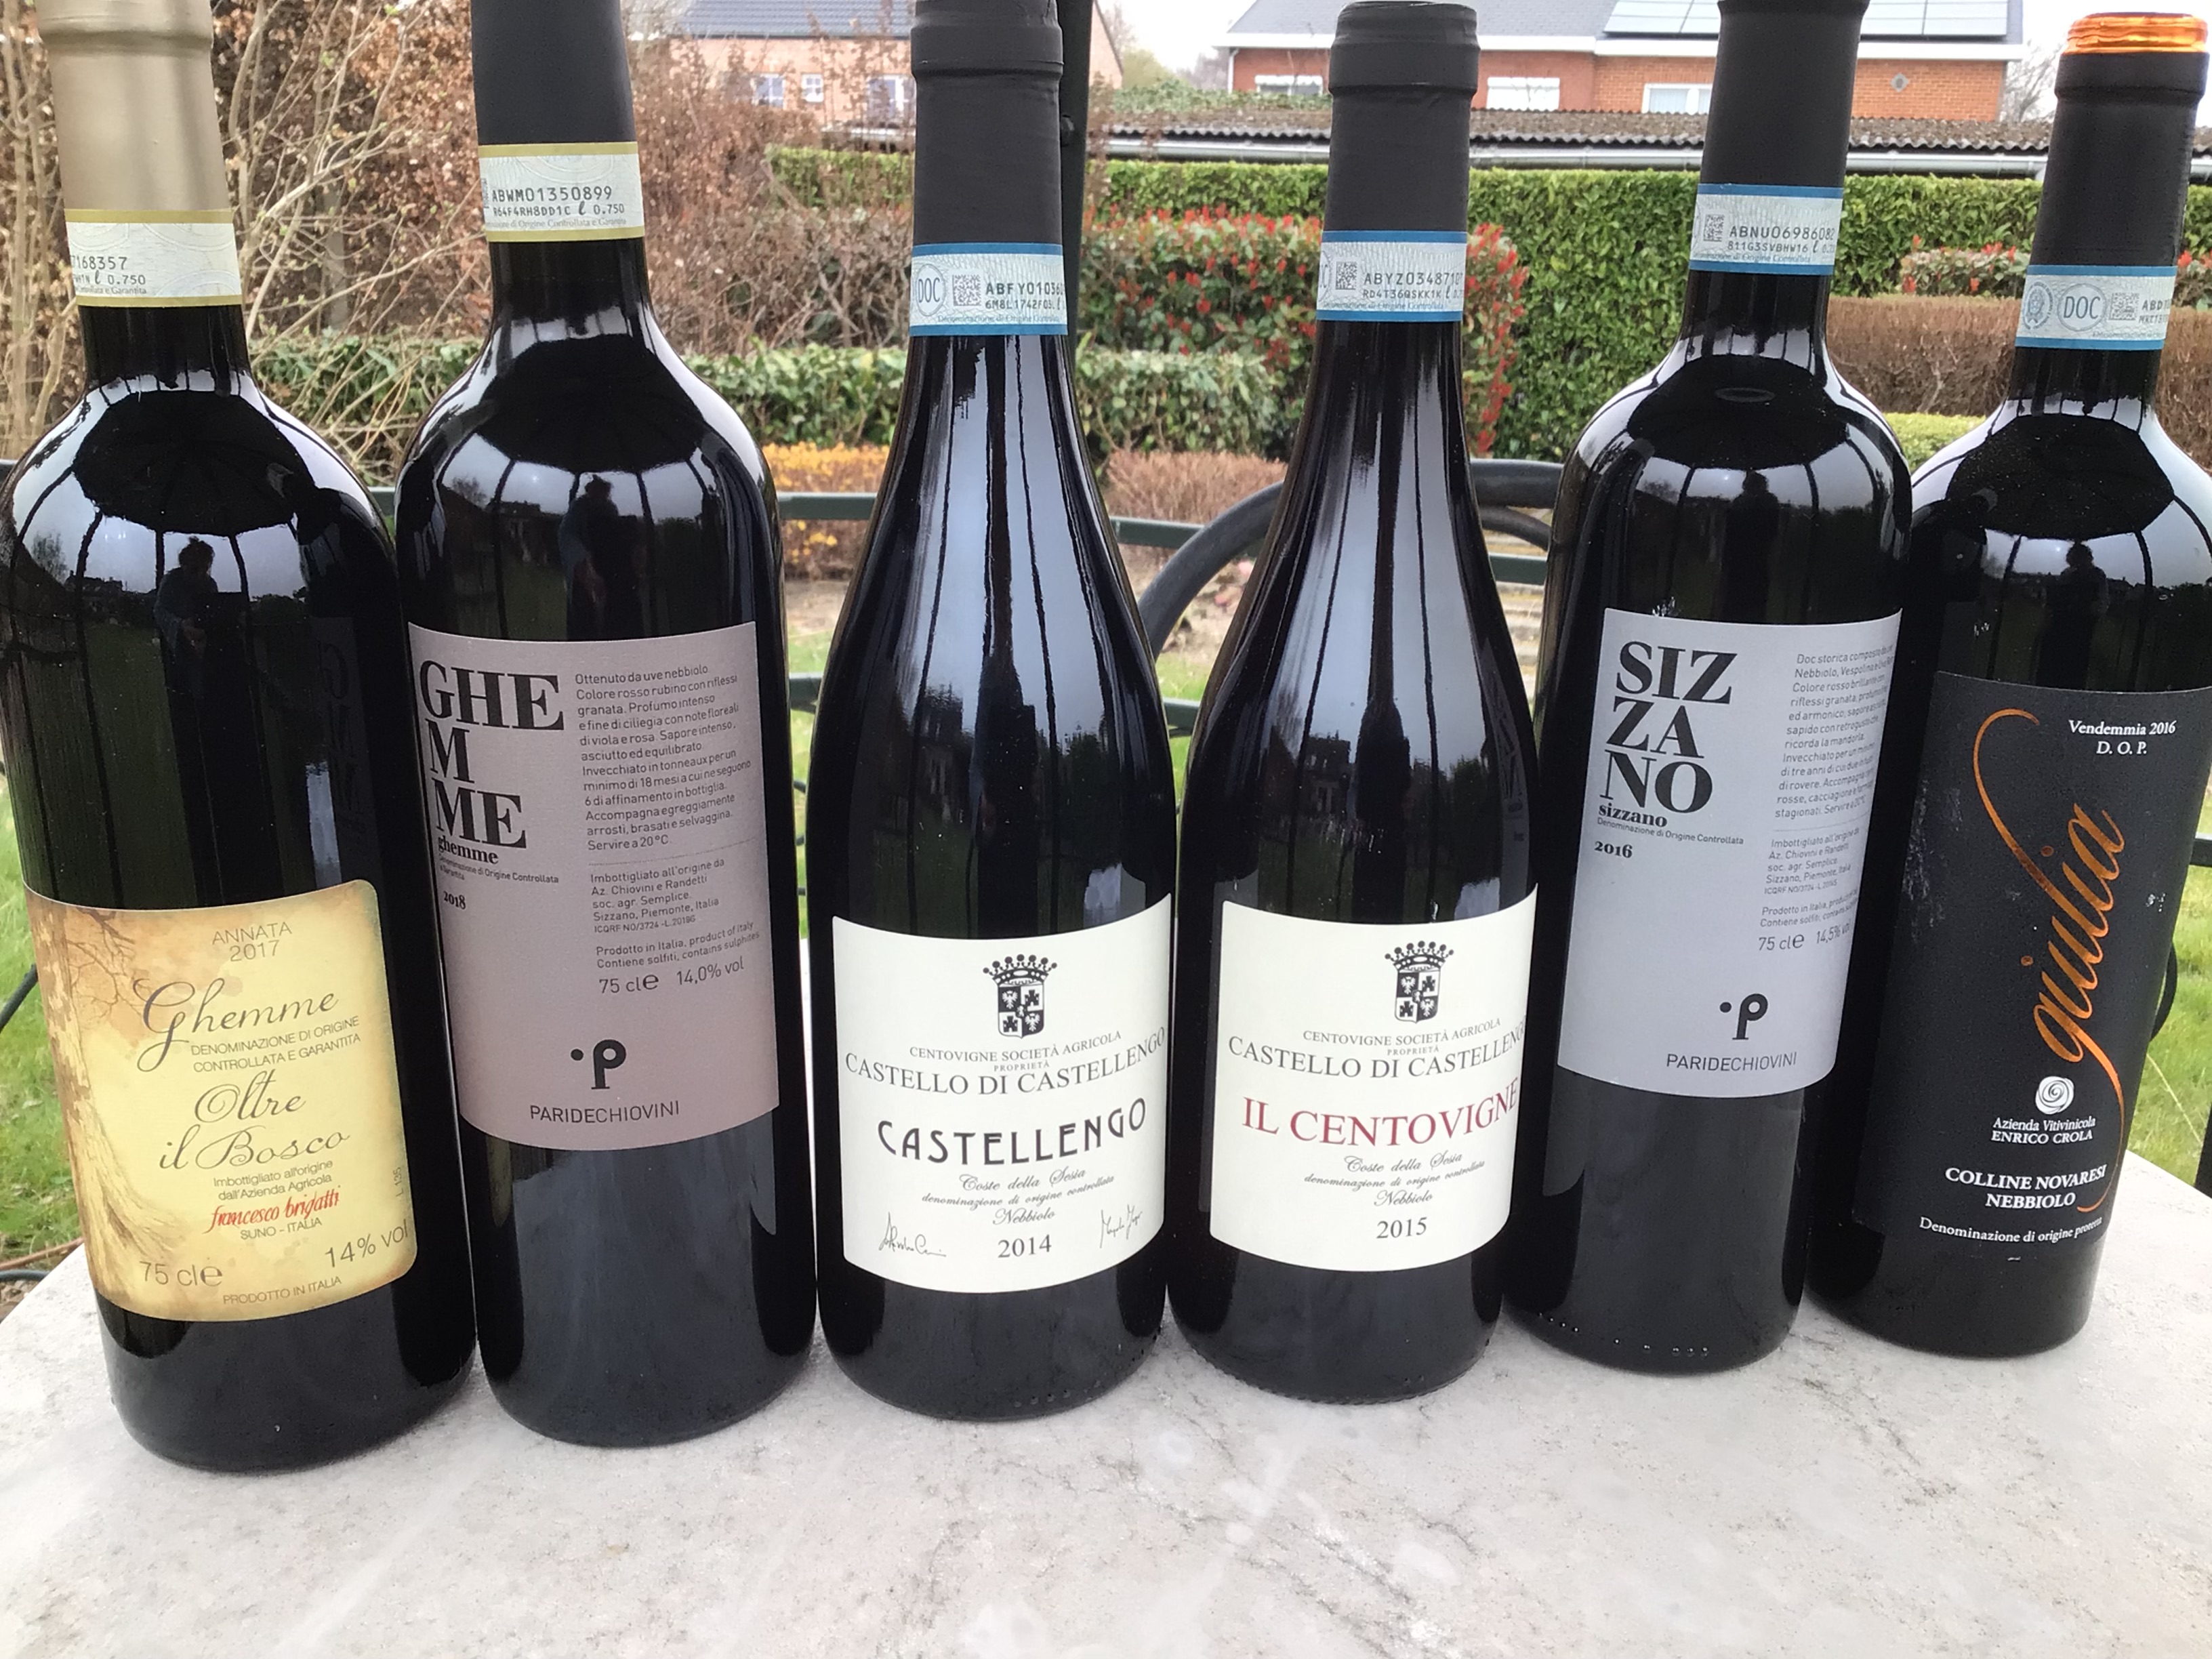 Wijnen uit Alto Piemonte zijn ondergewaardeerde bronnen van elegante, langlevende wijnen.